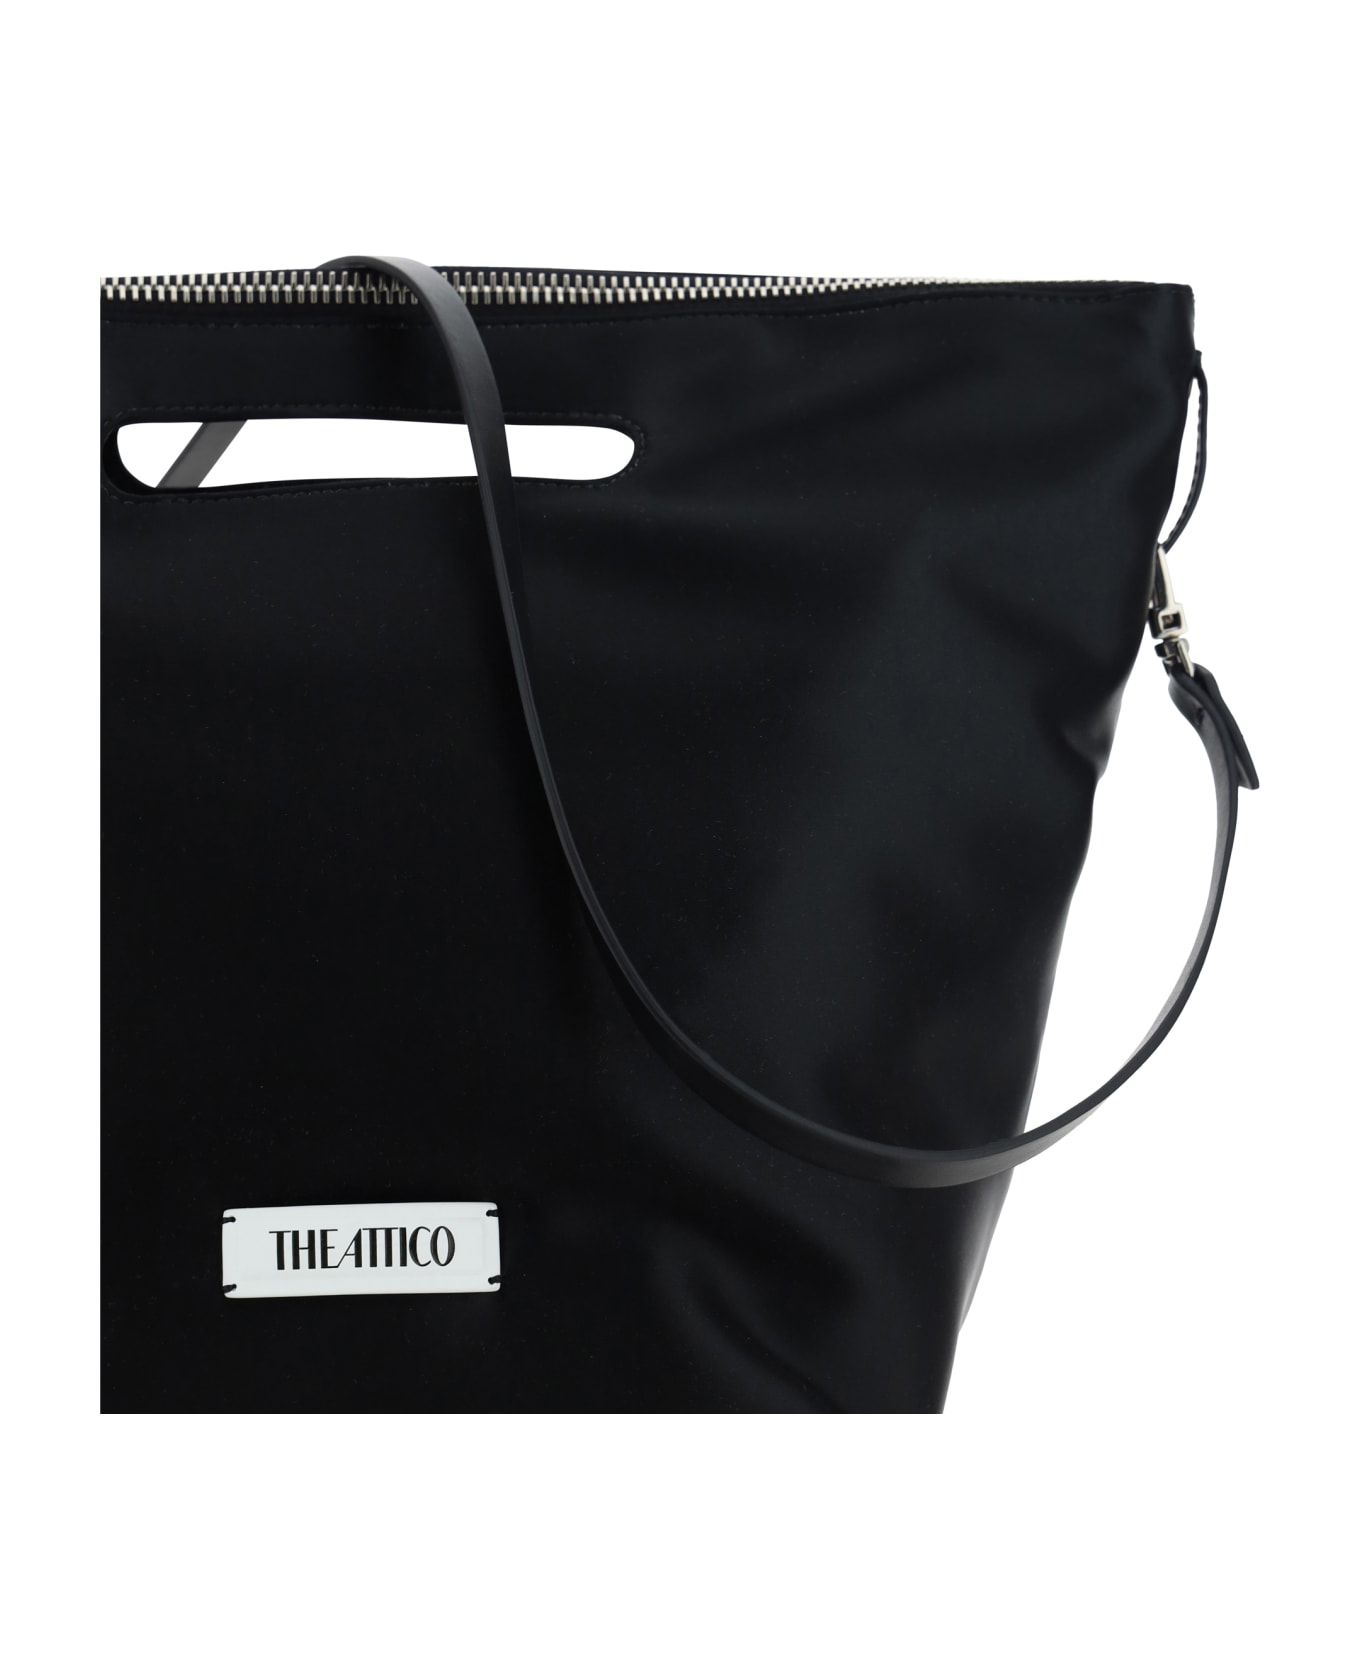 The Attico Via Dei Giardini 30 Handbag - Black バッグ